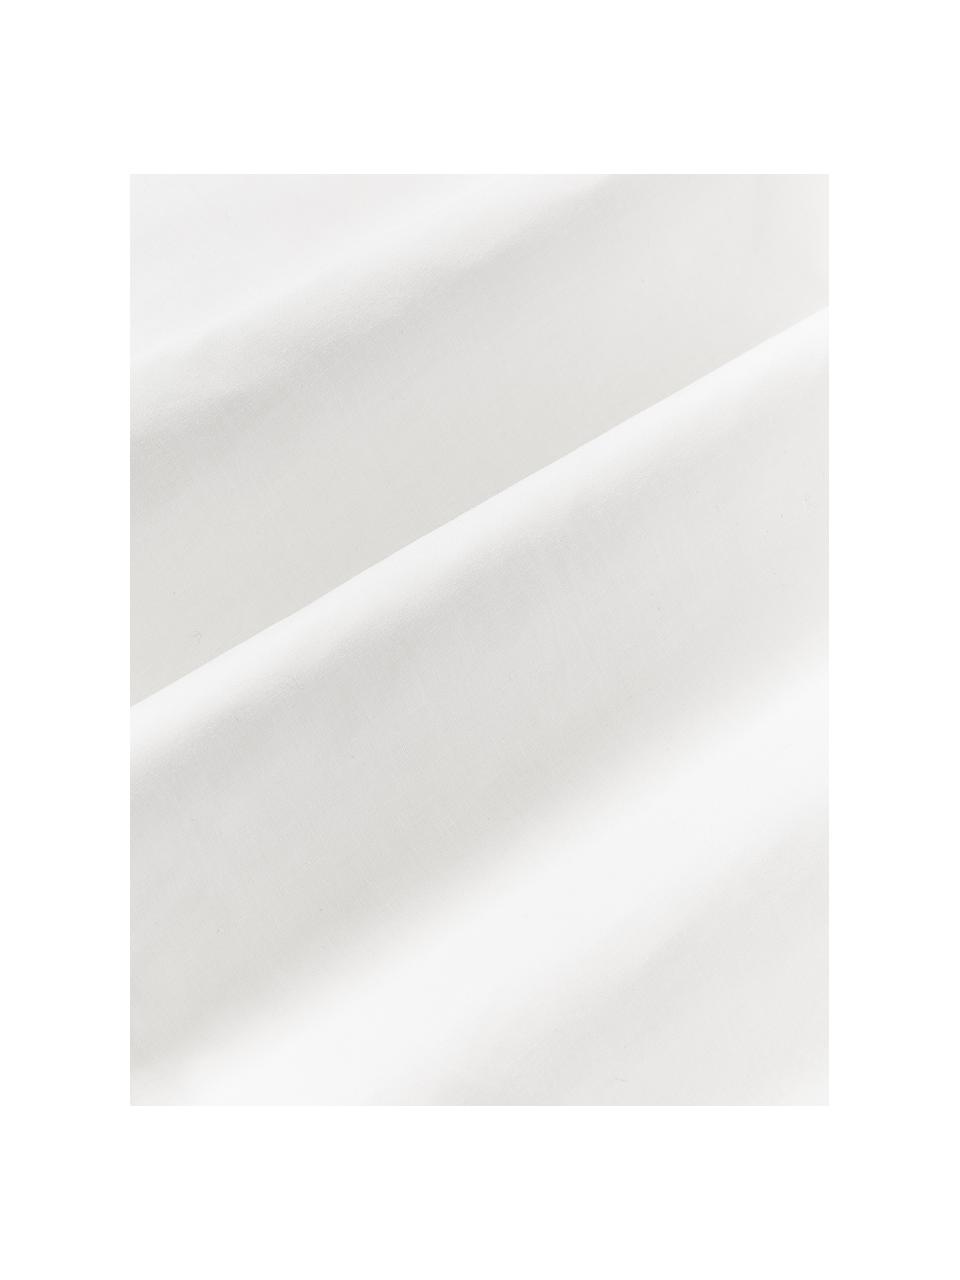 Seersucker-Bettwäsche Esme, Weiß, 200 x 200 cm + 2 Kissen 80 x 80 cm